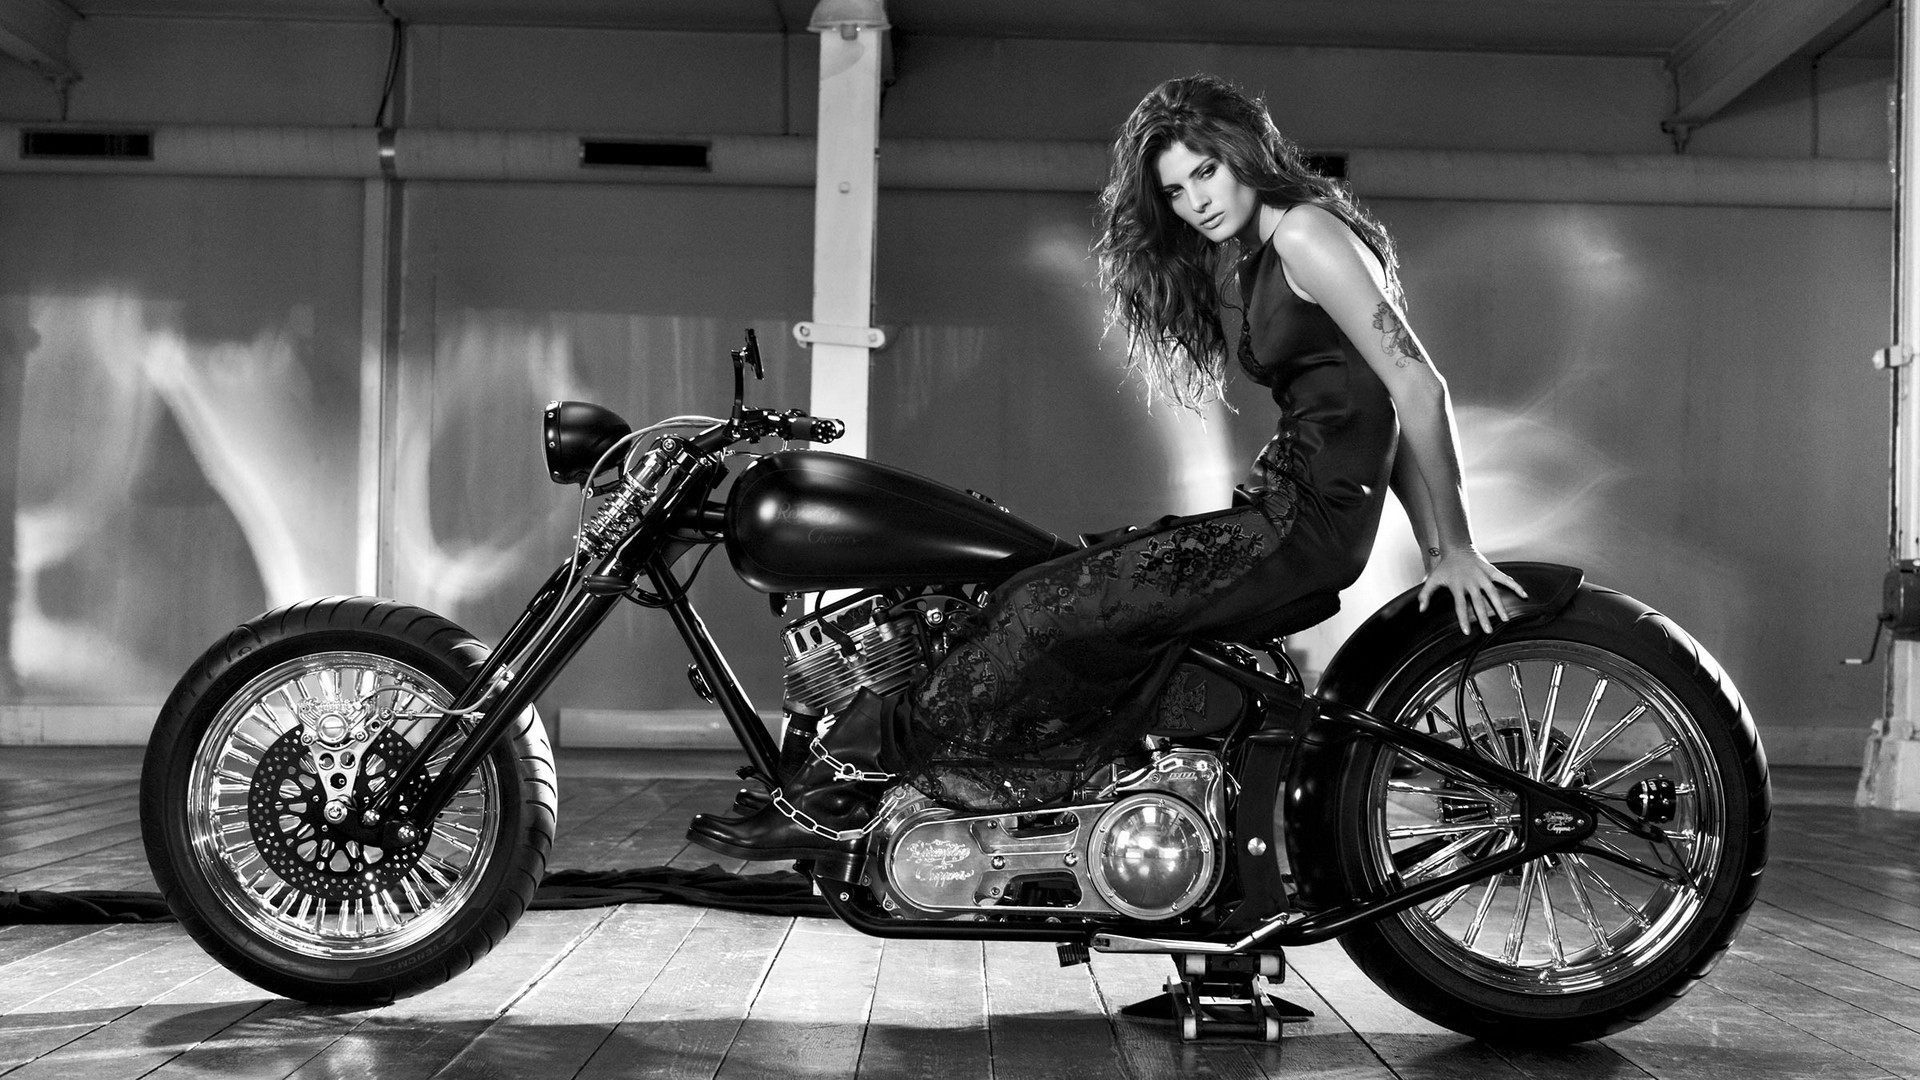 motorcycle girl wallpaper,land vehicle,motorcycle,vehicle,motor vehicle,chopper